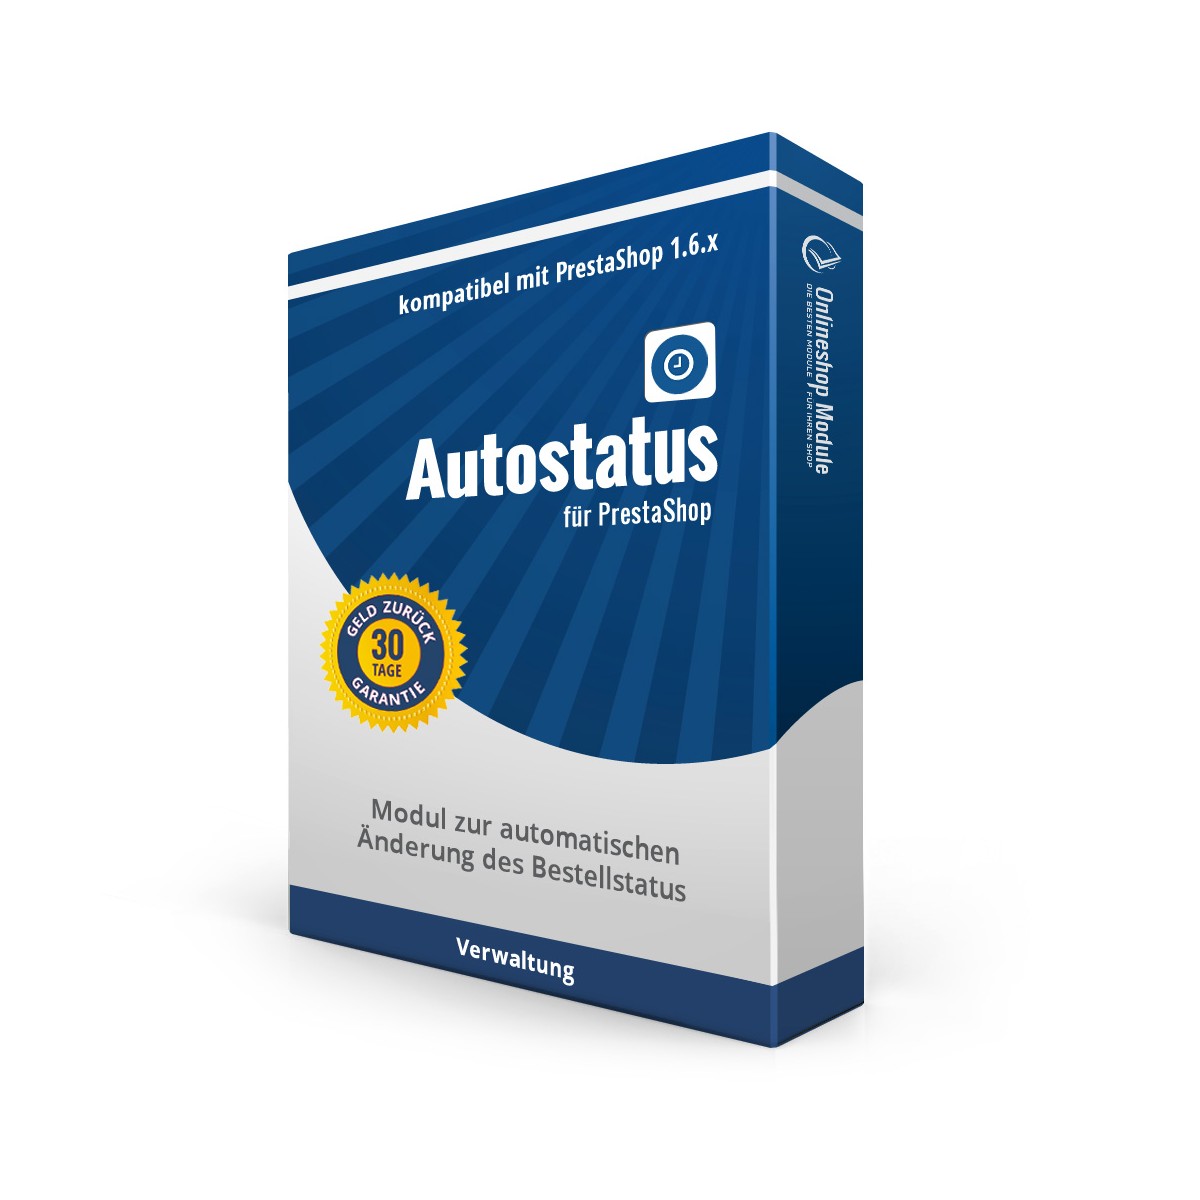 Autostatus für PrestaShop, Modul zur automatischen Änderung des Bestellstatus